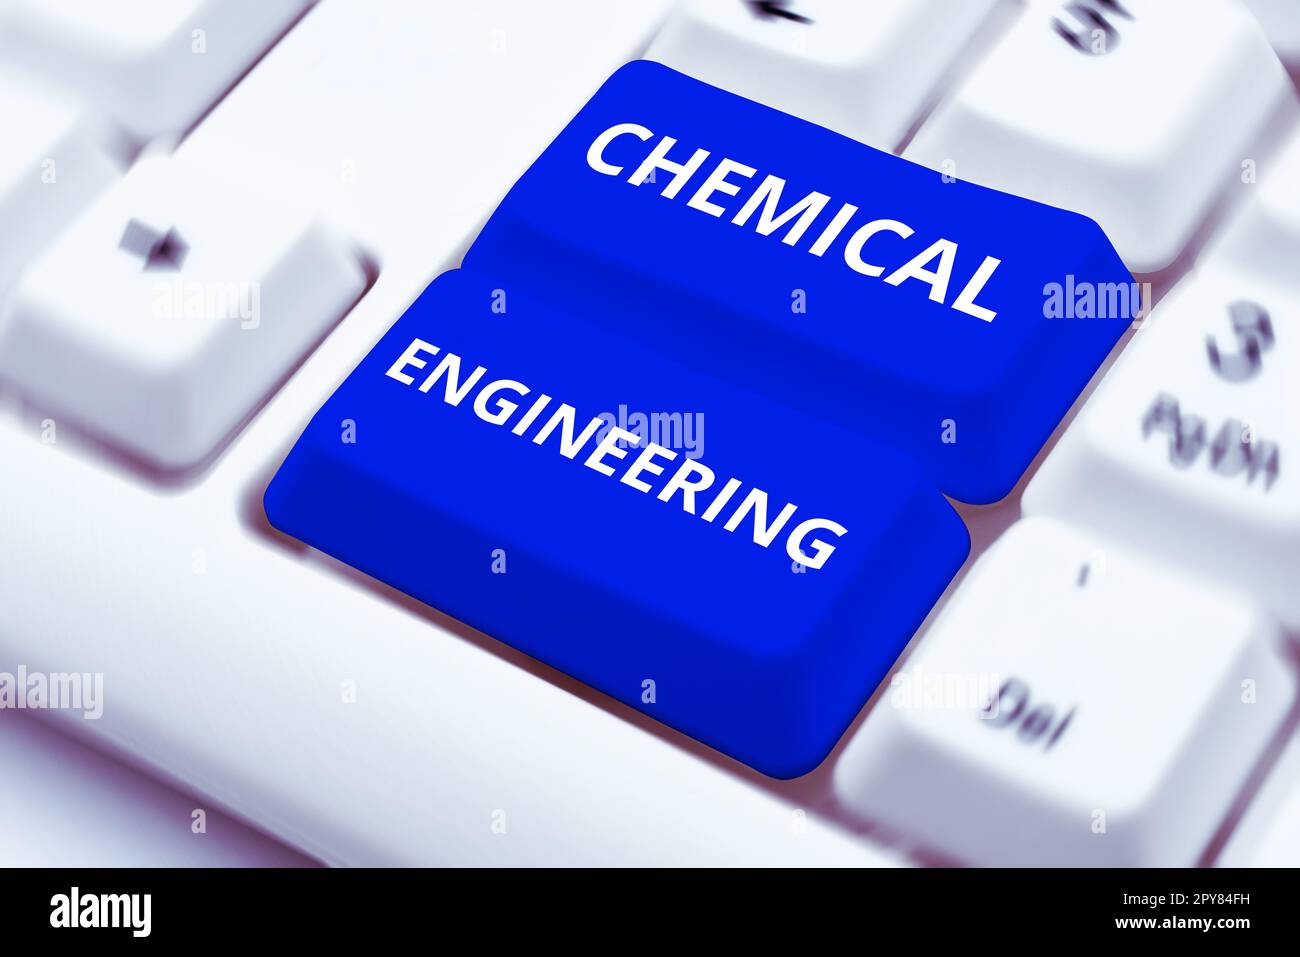 Schreiben mit Textanzeige Chemical Engineering. Konzeptionelle Fotoentwicklungsthemen für die industrielle Anwendung der Chemie Stockfoto